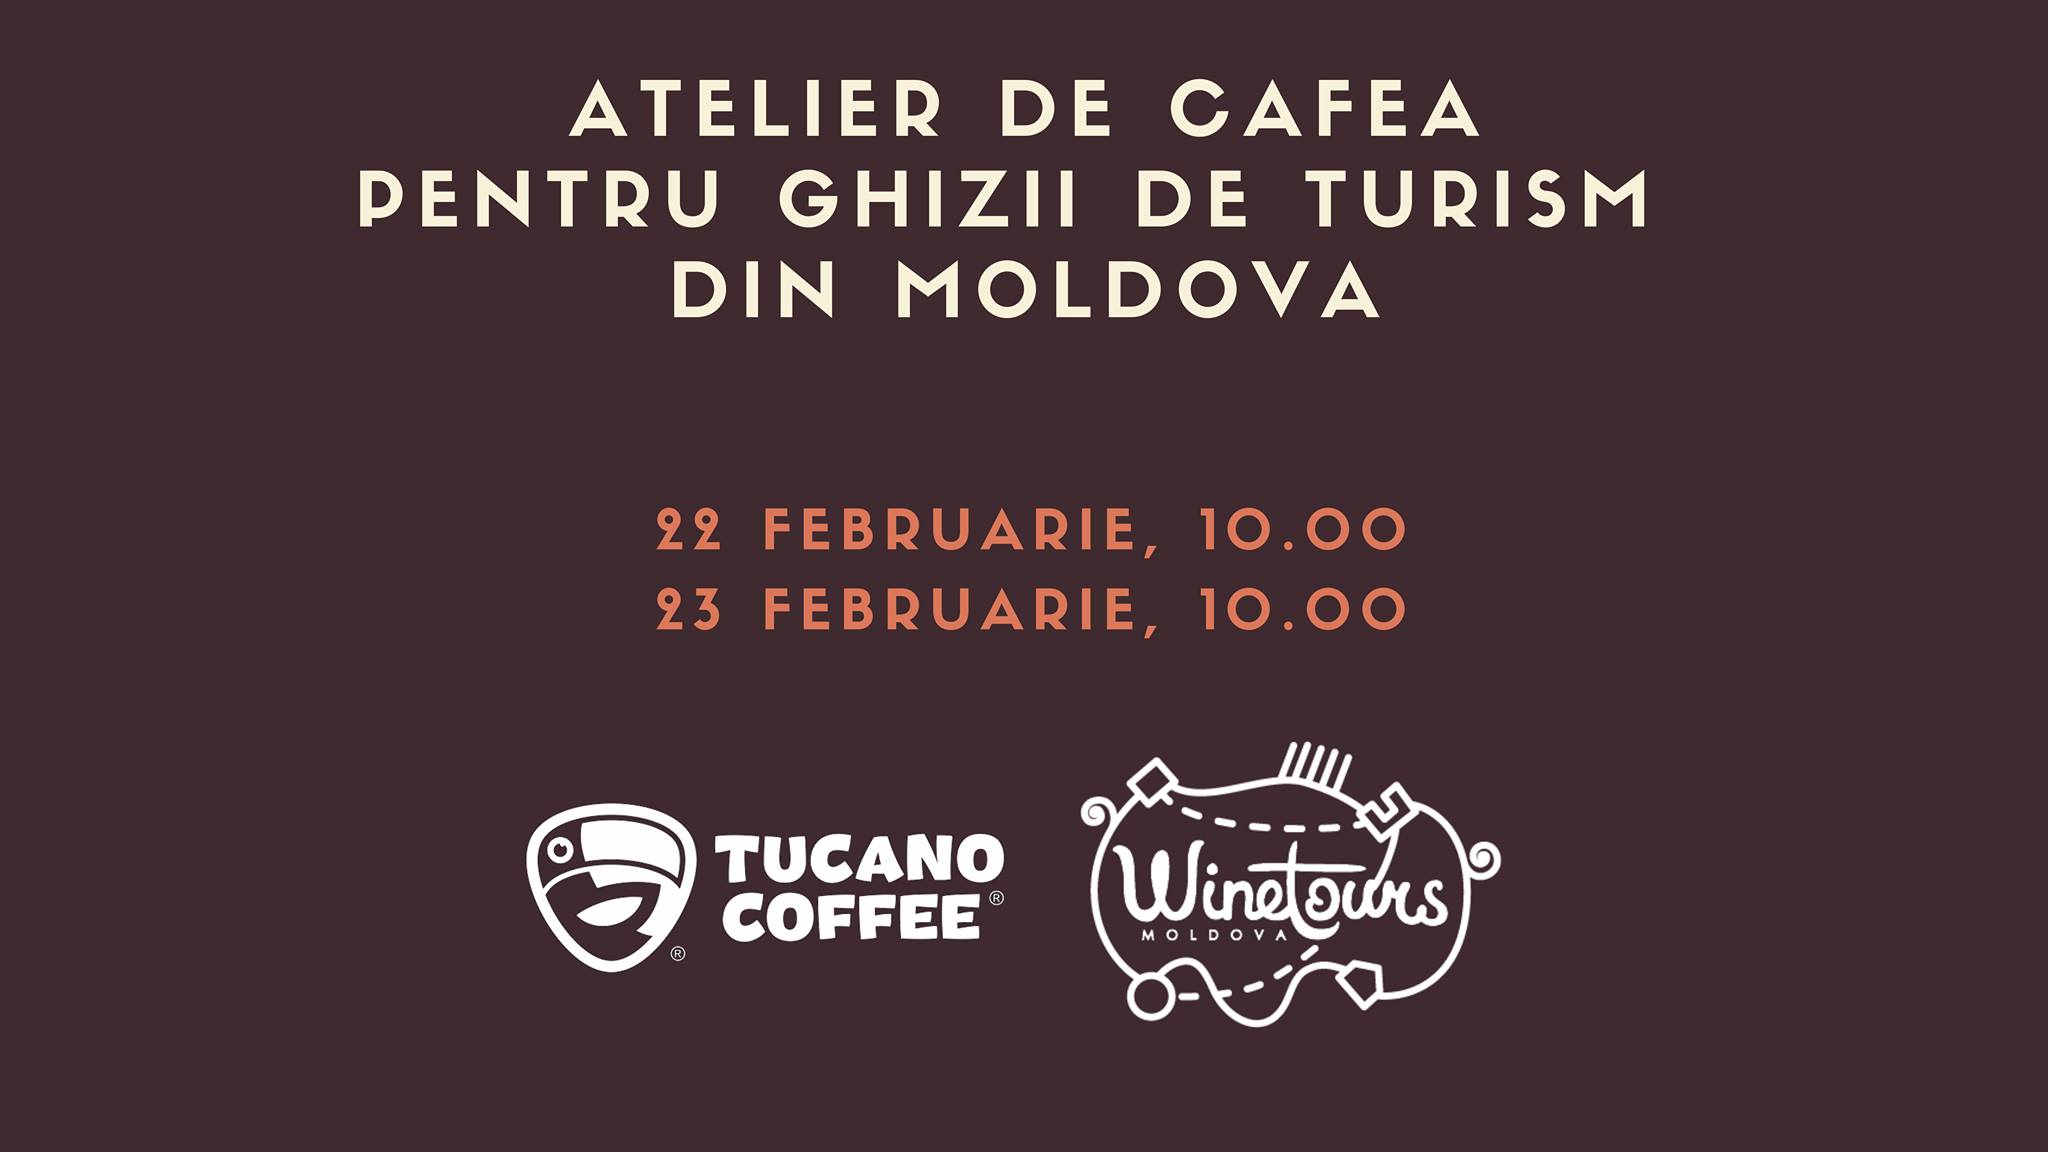 atelier de cafea tucano coffee ghizi de turism